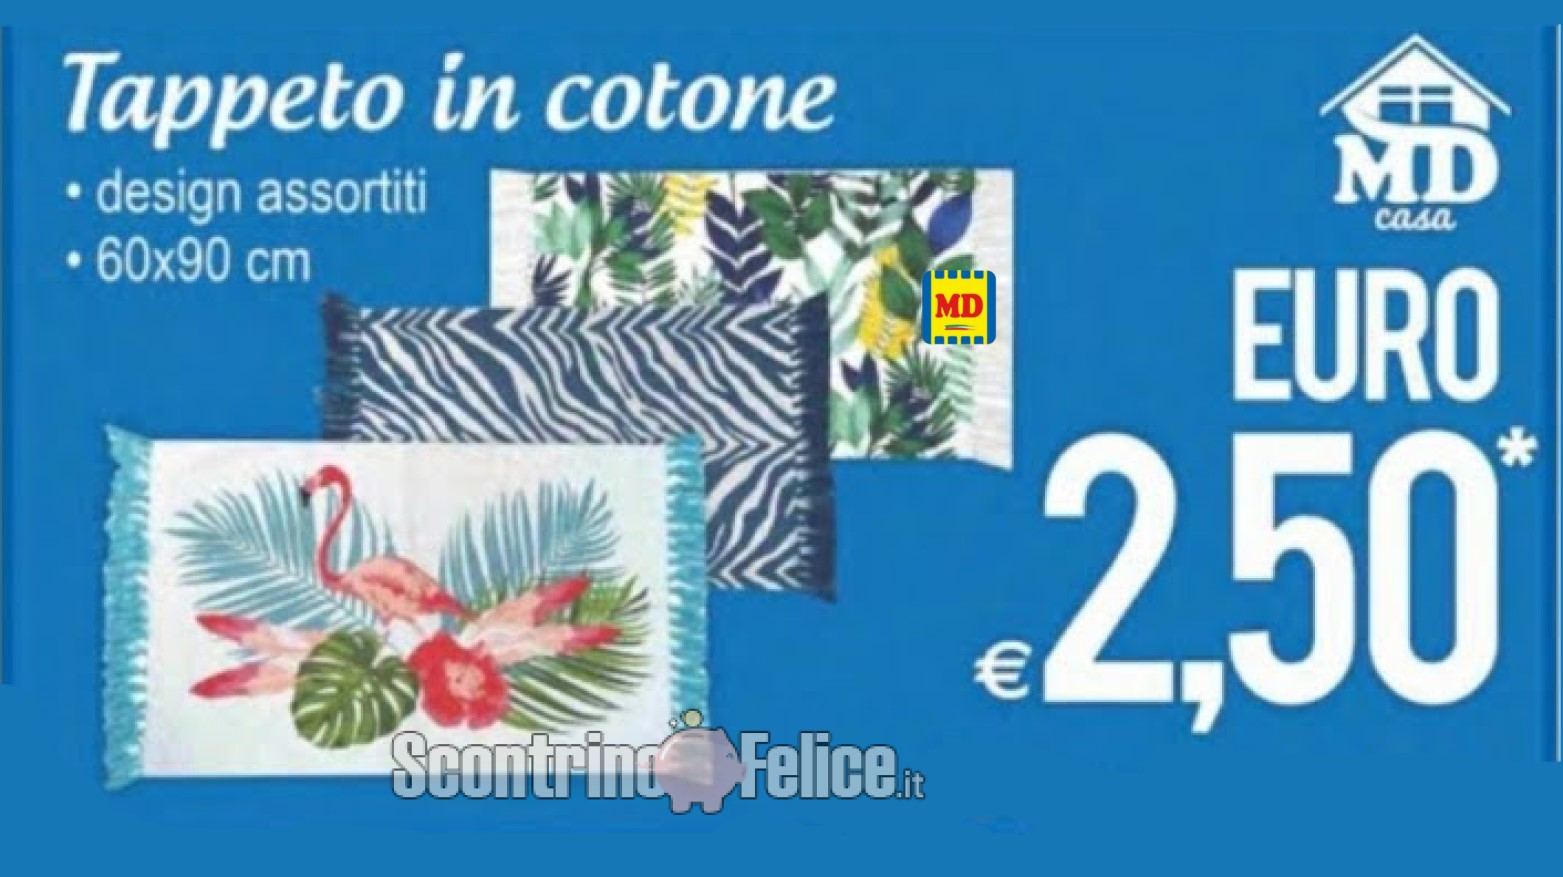 Tappeto in cotone a solo 2,50€ da MD: scopri come averlo!